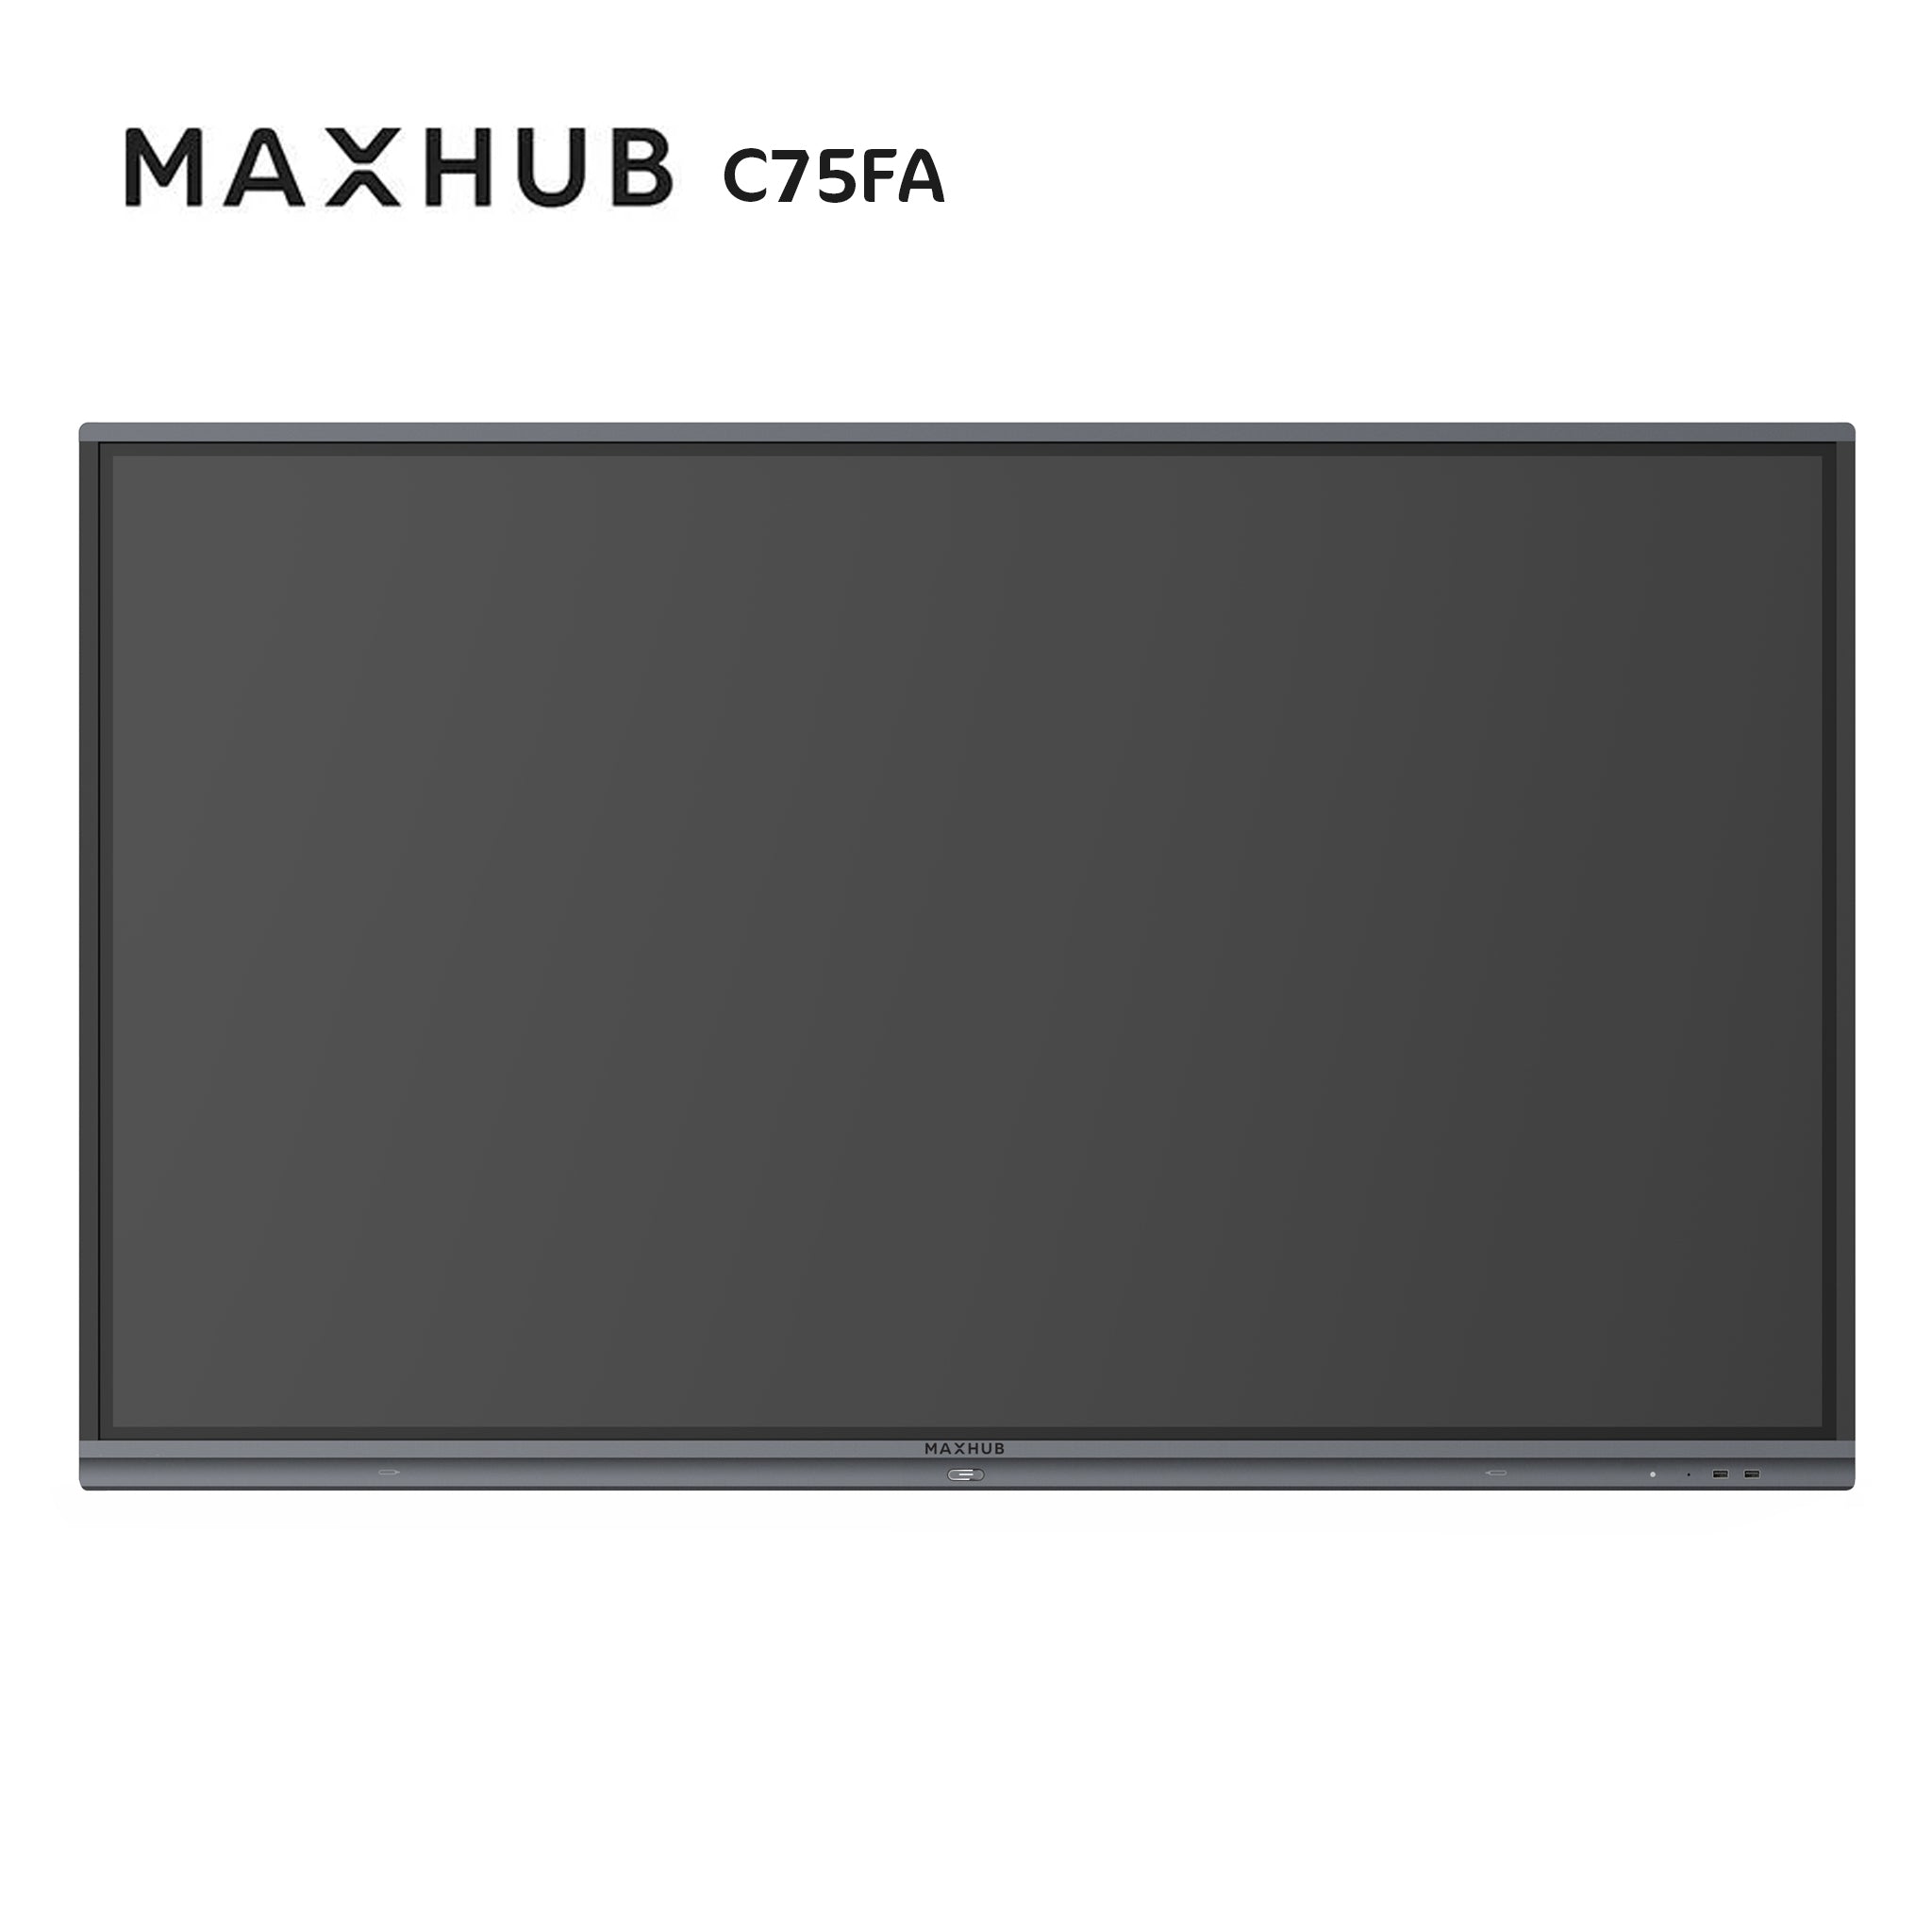 MAXHUB C75FA - Classic Interactive Touch Screen C75FA | AL-VoIP Store